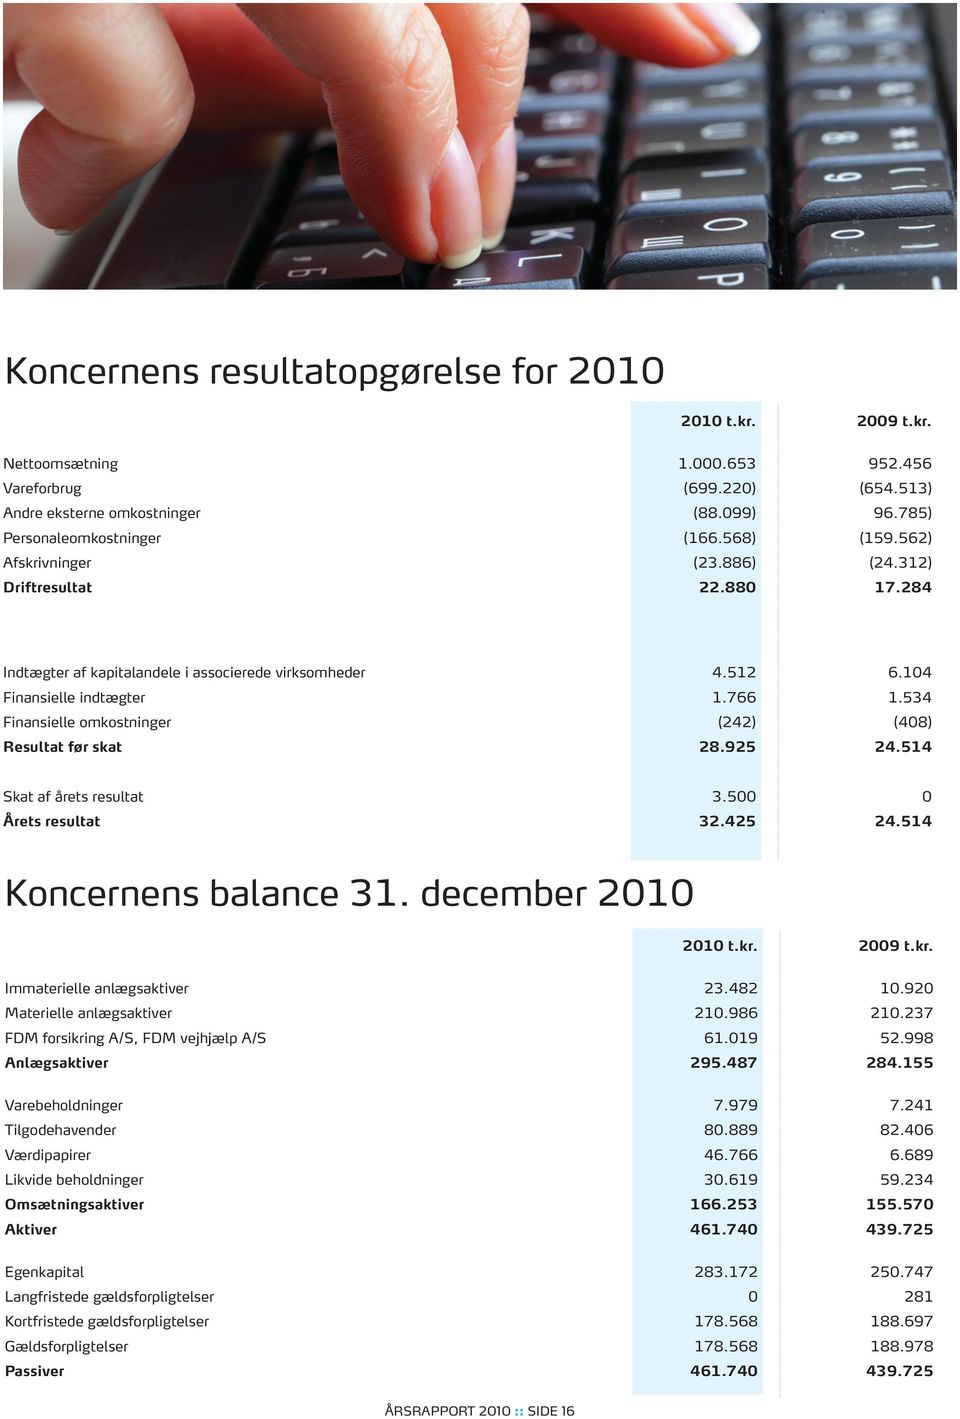 534 Finansielle omkostninger (242) (408) Resultat før skat 28.925 24.514 Skat af årets resultat 3.500 0 Årets resultat 32.425 24.514 Koncernens balance 31. december 2010 2010 t.kr.